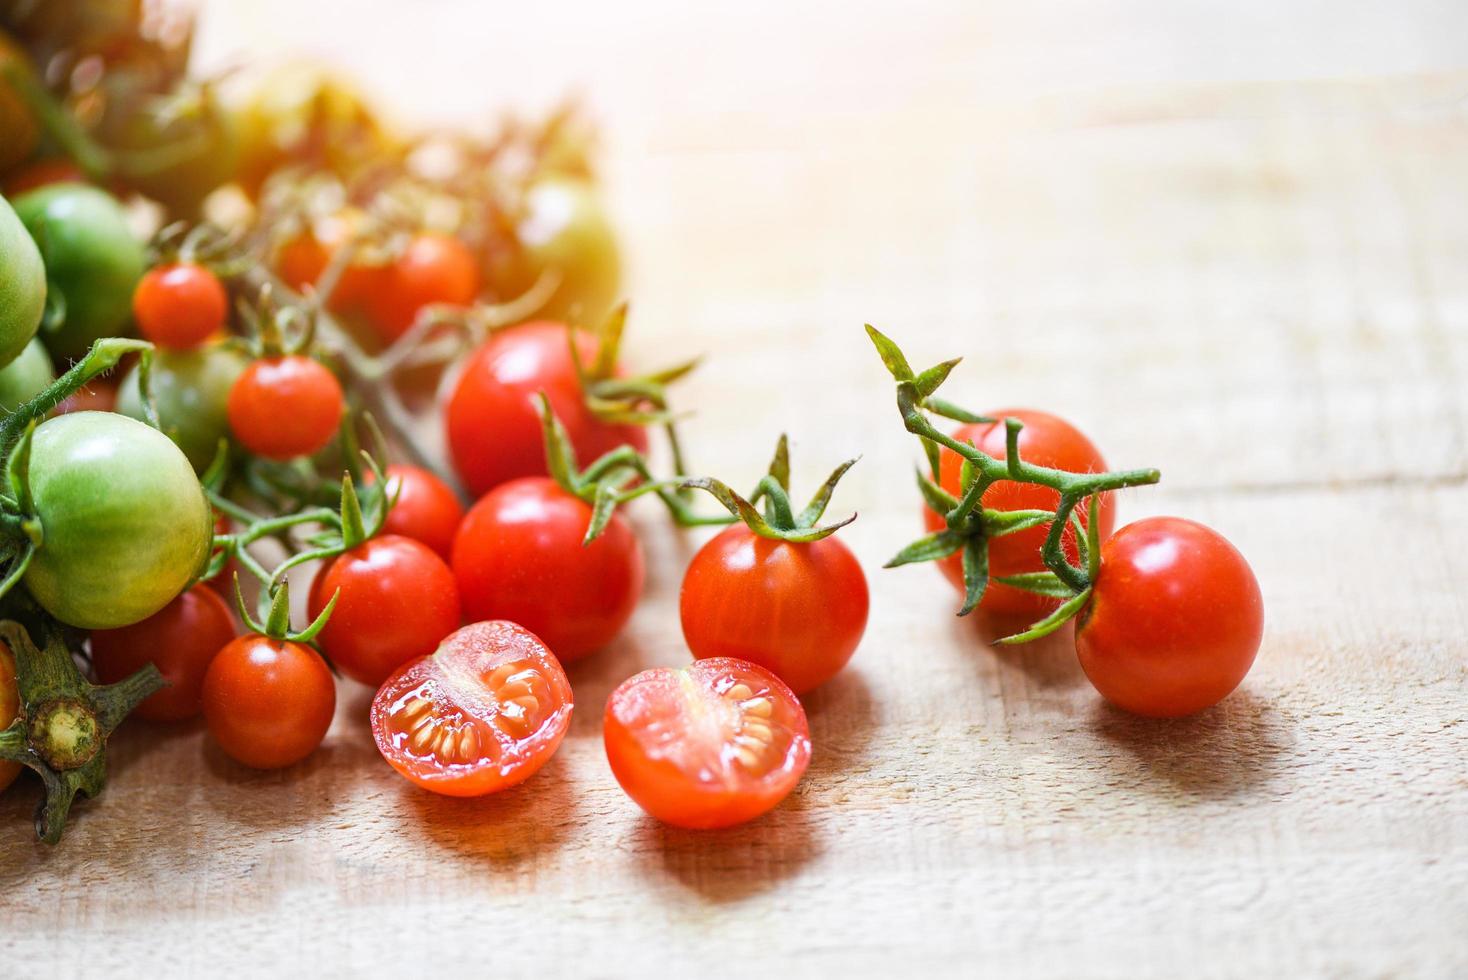 ernten von frischen tomaten organisch mit grünen und reifen roten tomaten auf holz foto